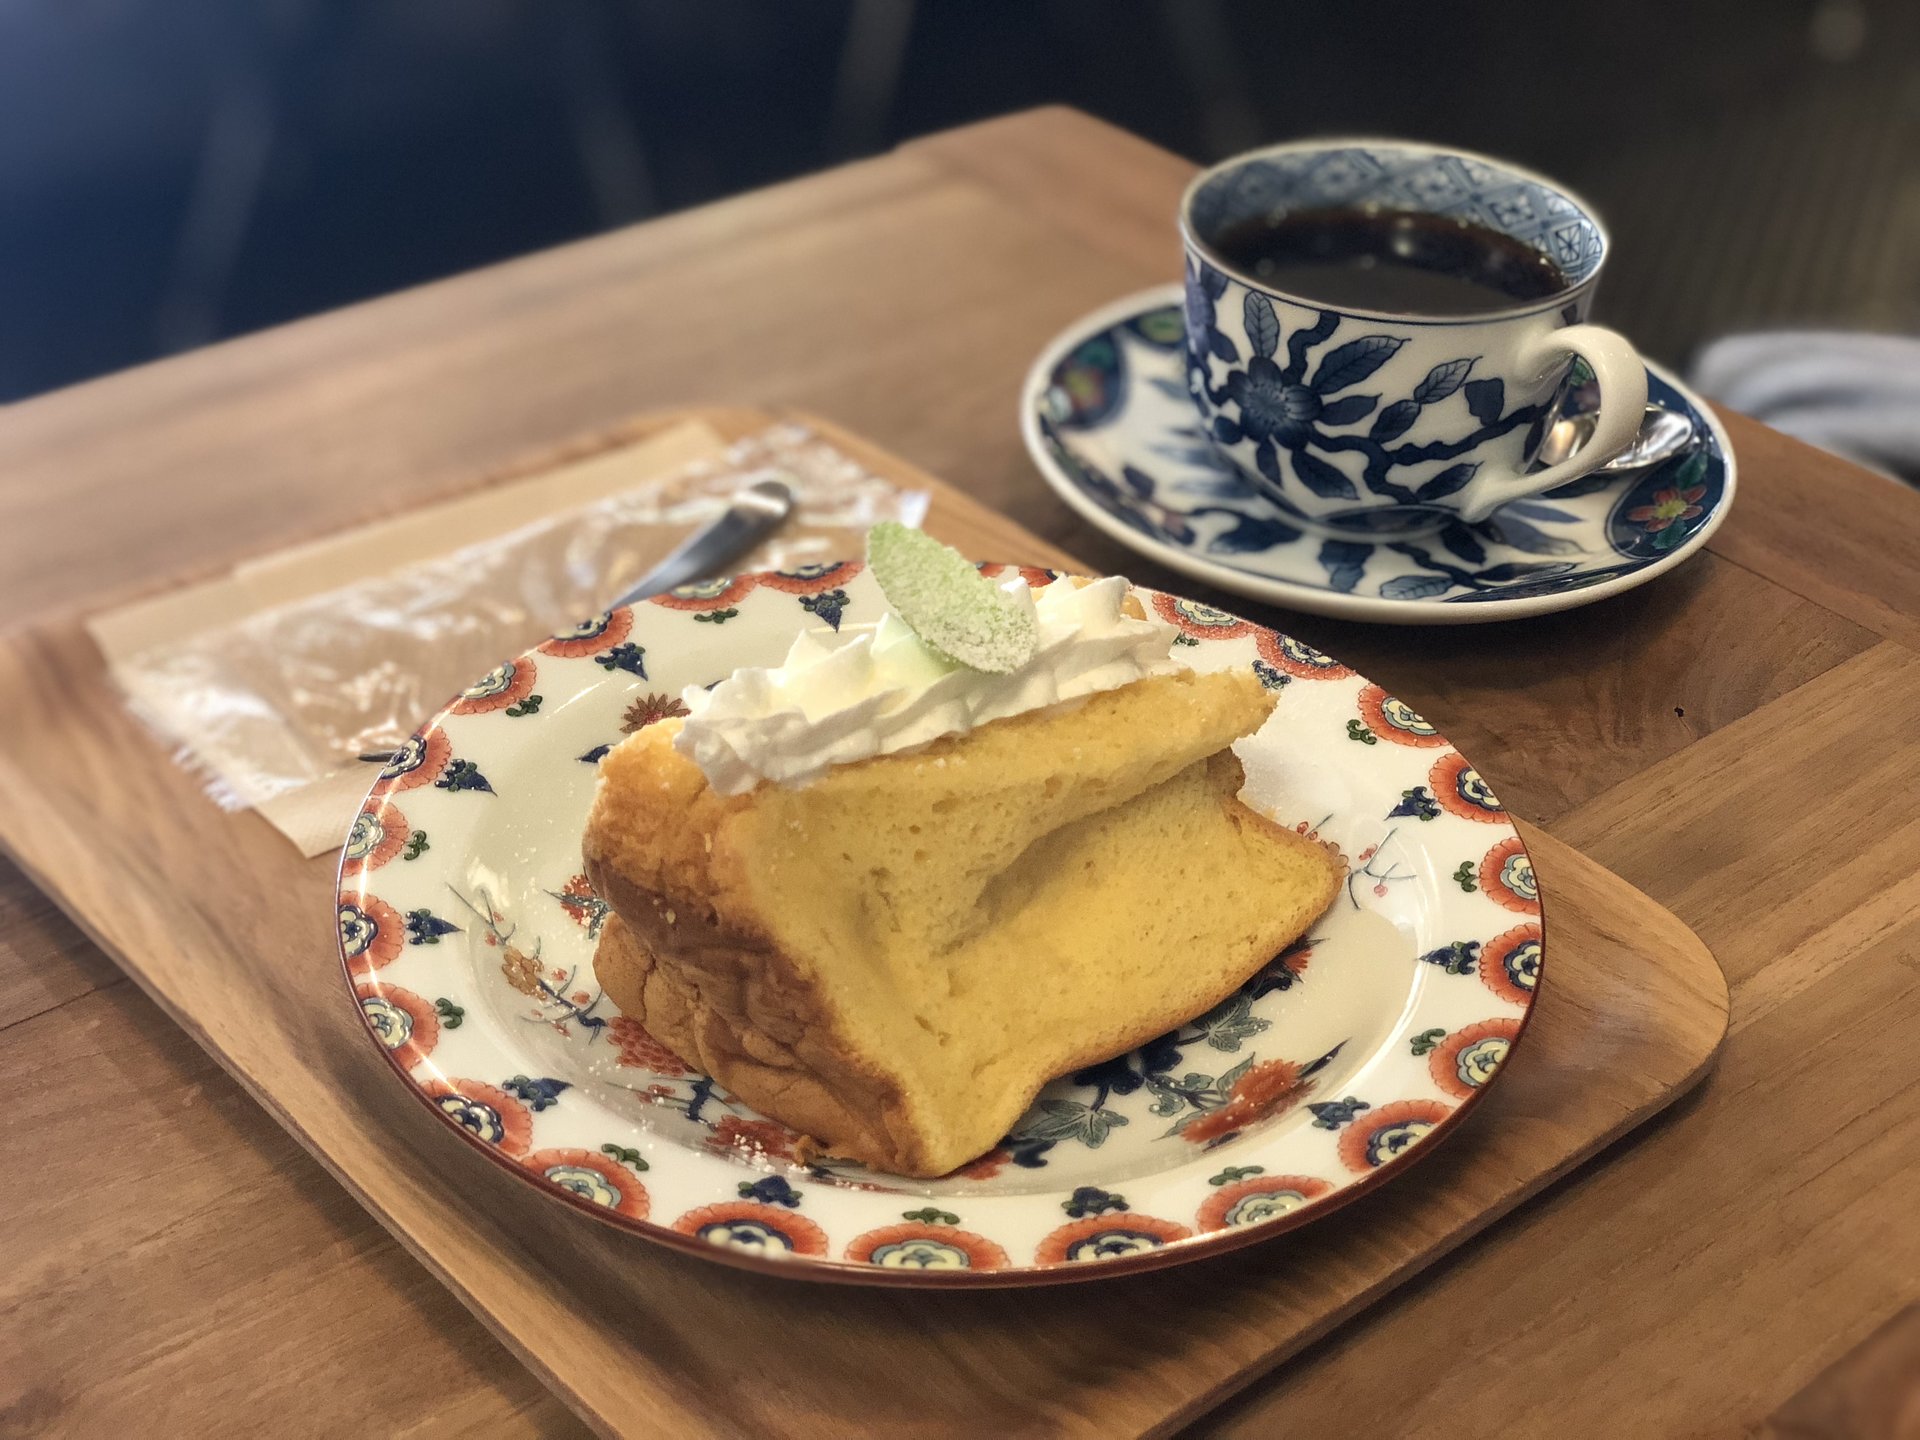 【otaco】浅草おすすめスイーツ『シフォンケーキ』が食べられるカフェ